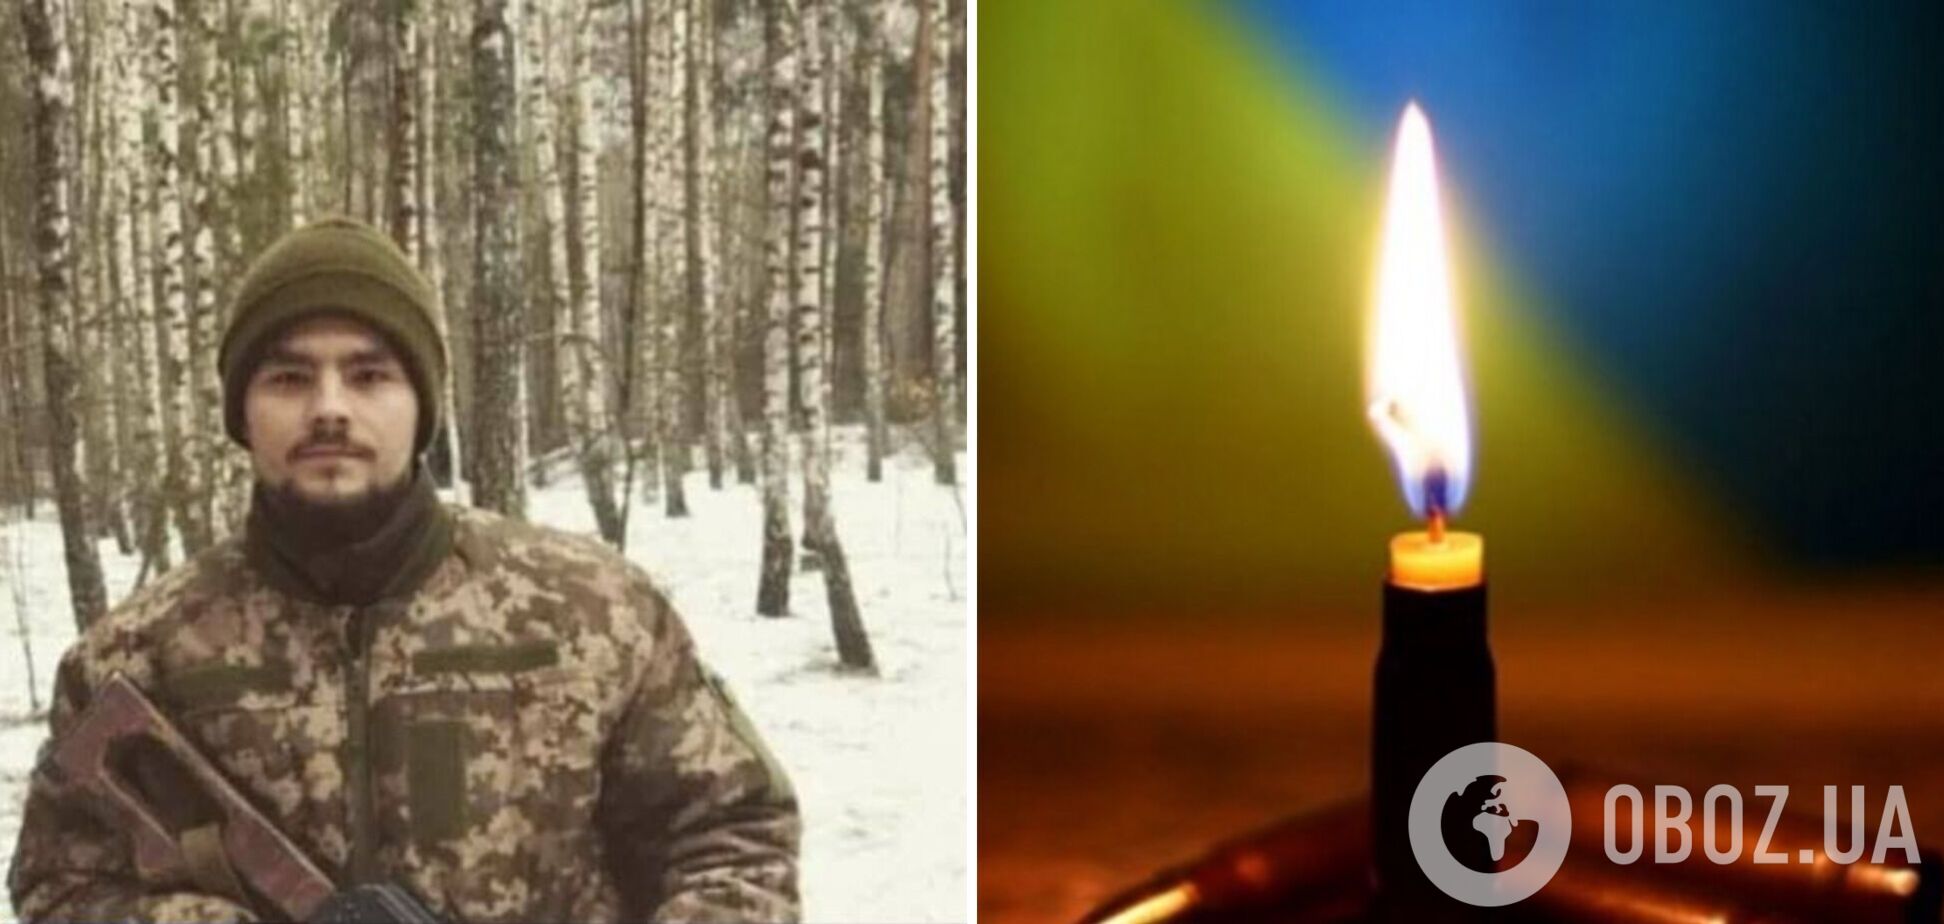 'Плани на майбутнє зруйнувала війна': у боях за Україну загинув 22-річний захисник з Херсонщини